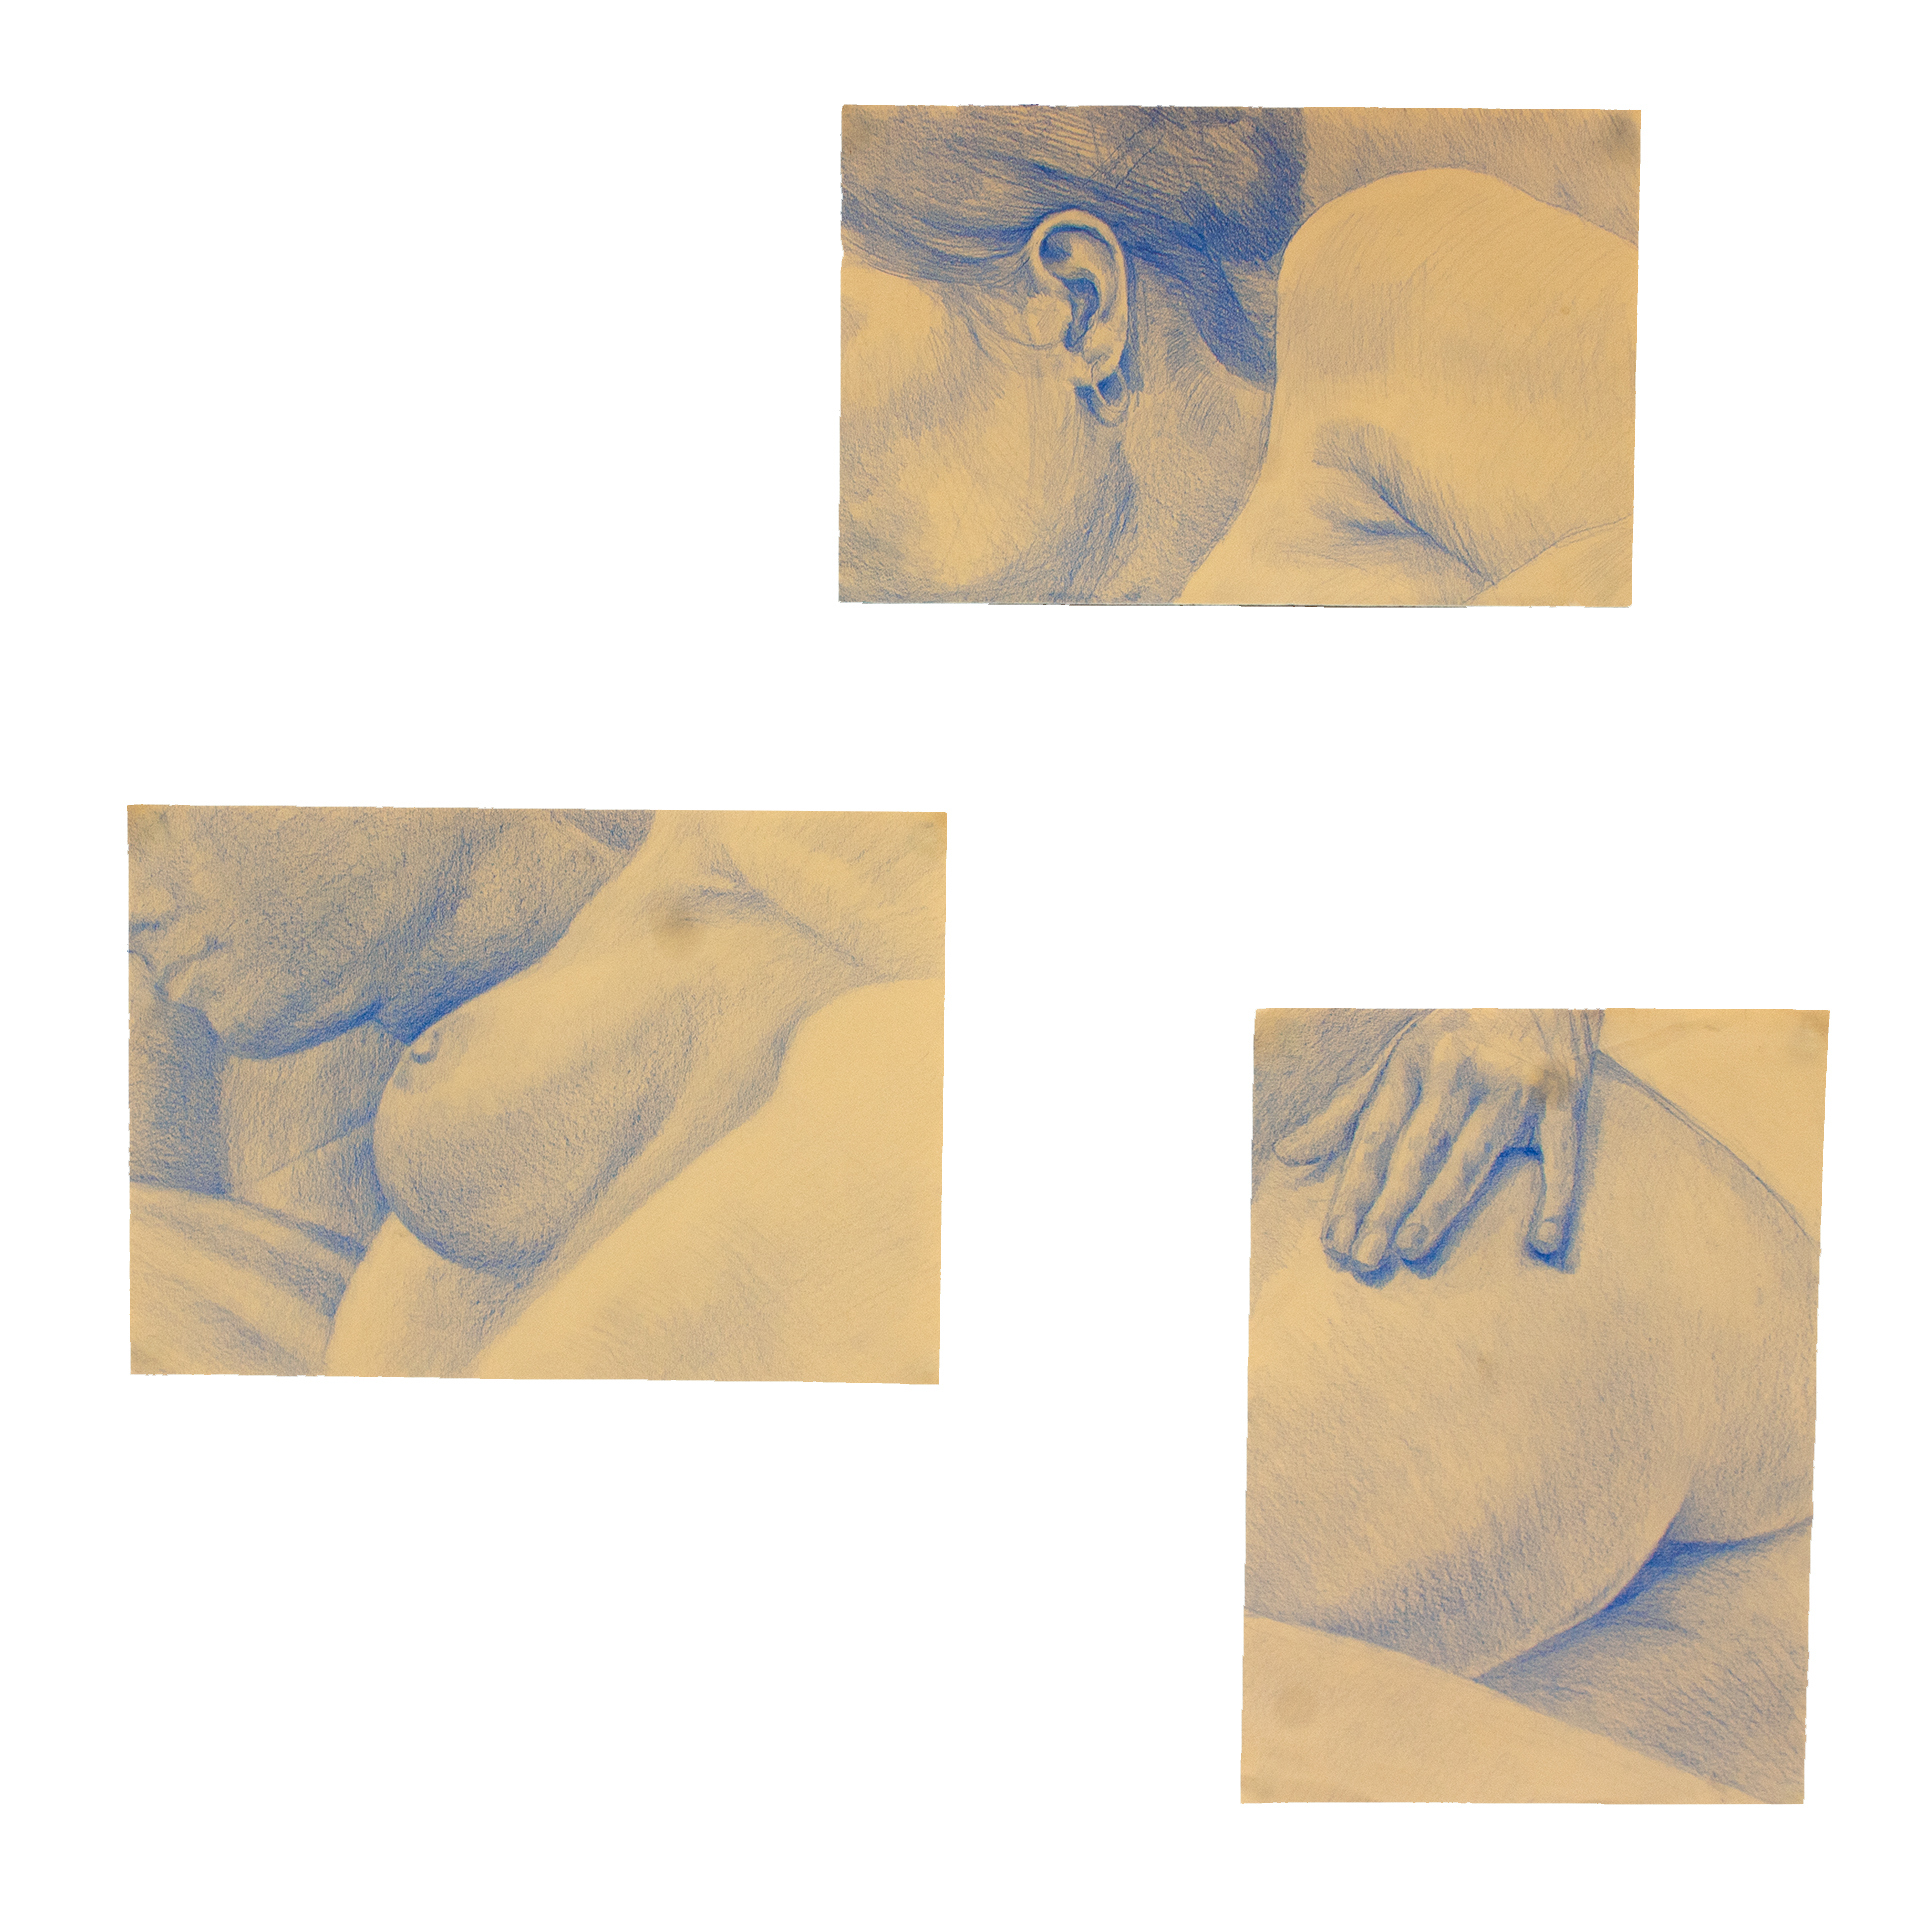 Utrzymane w błękitnej tonacji trzy realistyczne szkice przedstawiające fragmenty postaci  kobiecej leżącej na prawym boku.